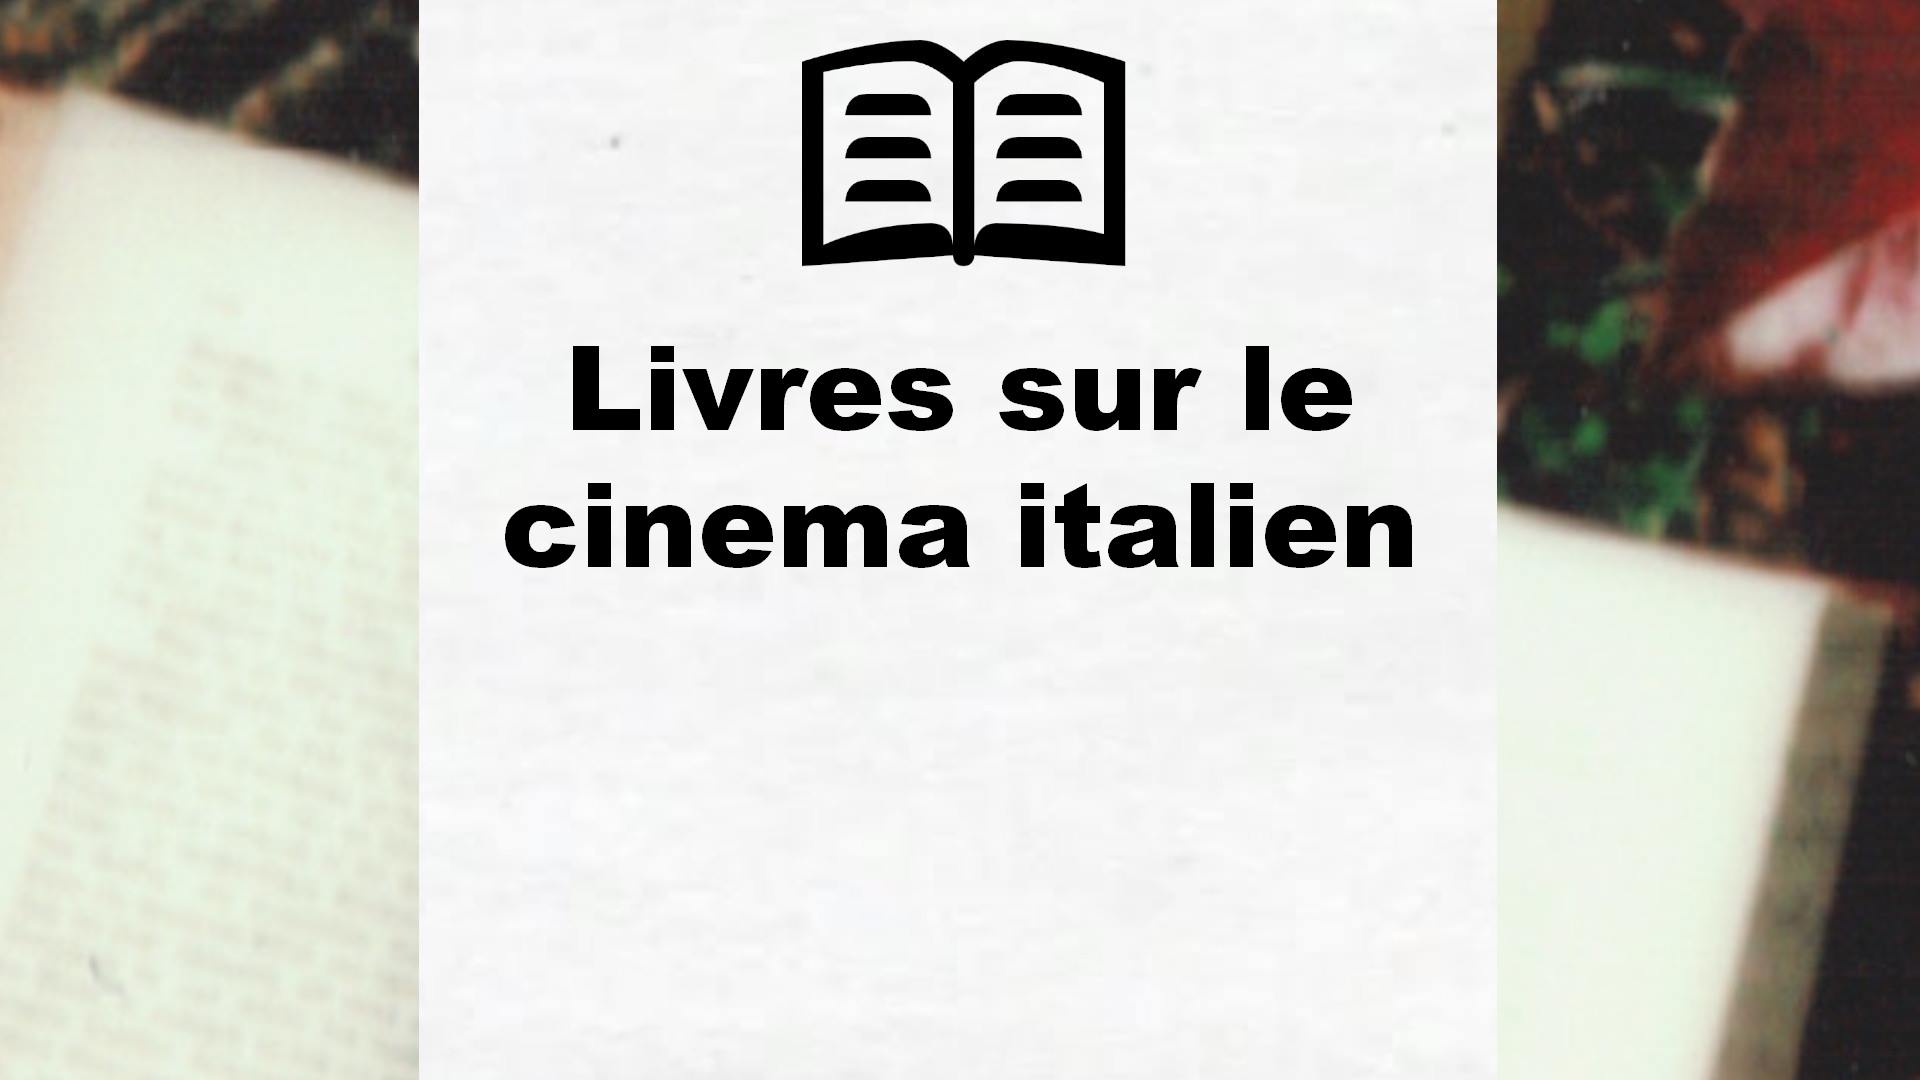 Livres sur le cinema italien